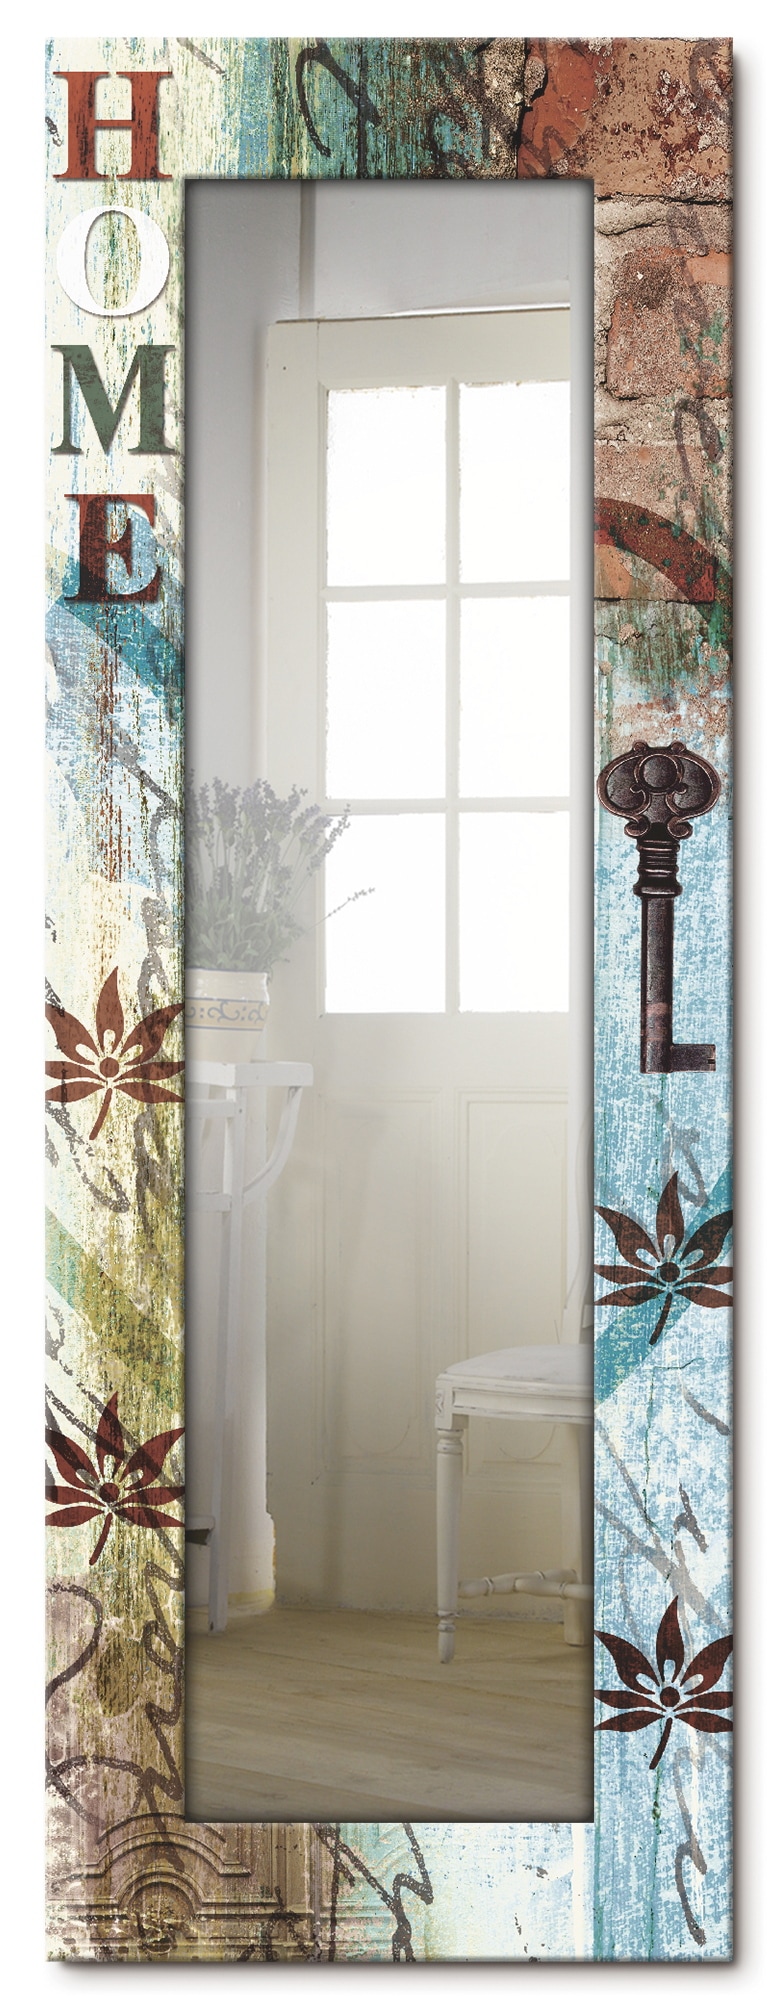 Artland Dekospiegel »Buntes zu Hause in taktvollen Farben«, gerahmter Ganzkörperspiegel, Wandspiegel, mit Motivrahmen, Landhaus